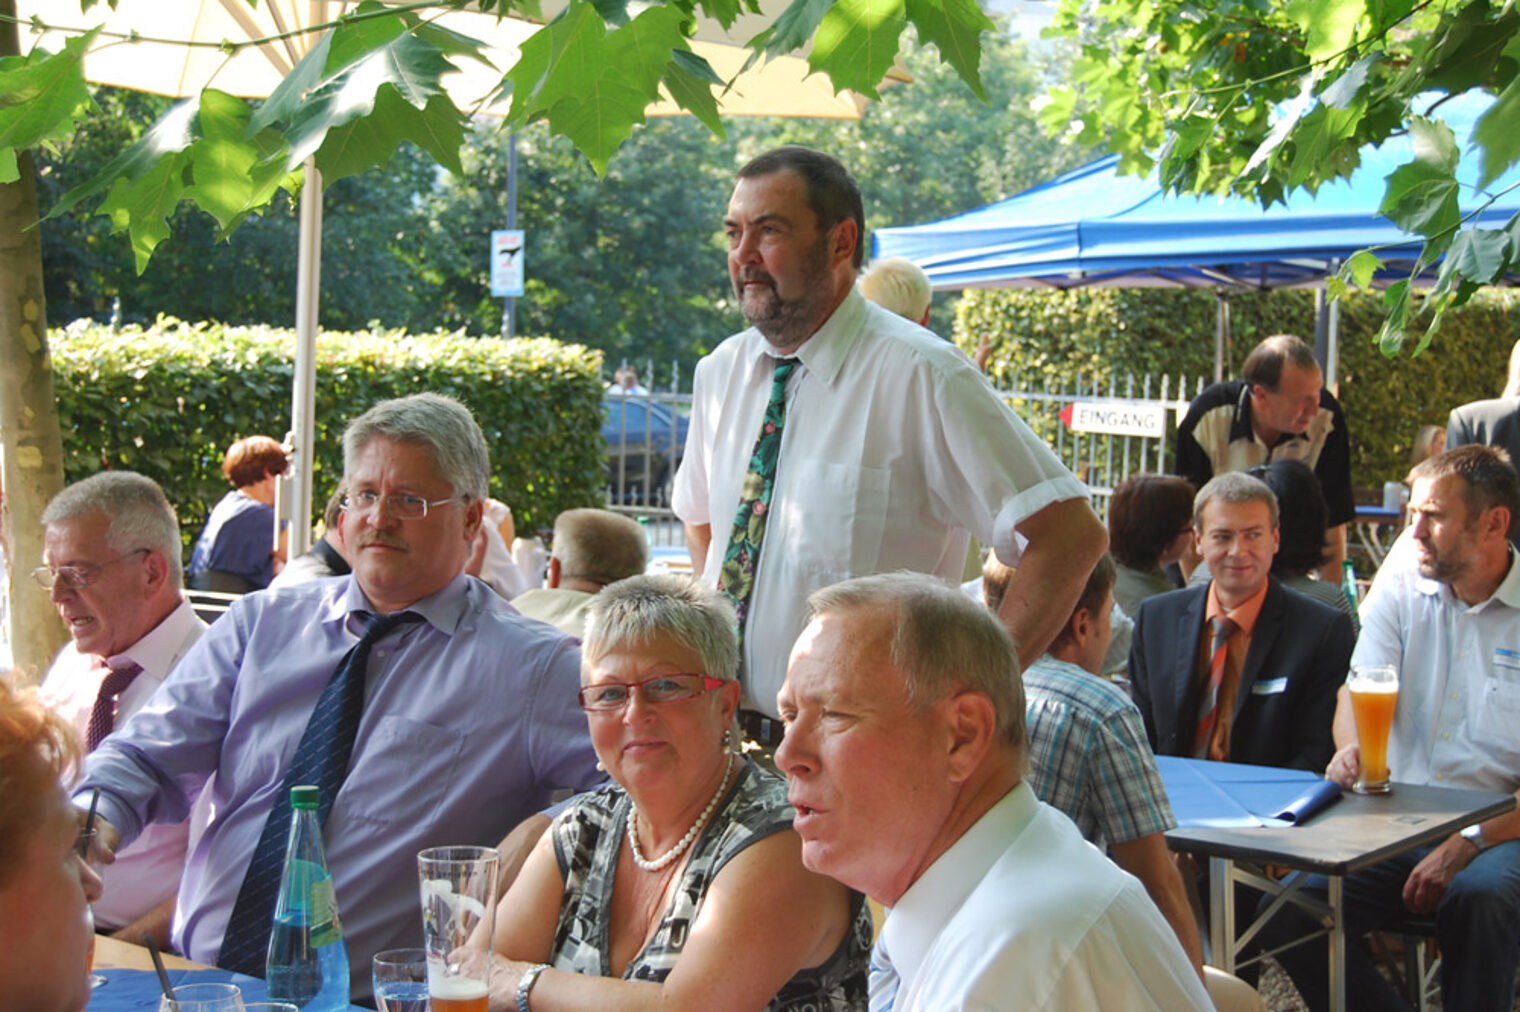 Sommerfest der Handwerkskammer und Verabschiedung von Joachim Dirschka am 25. August 2011 11